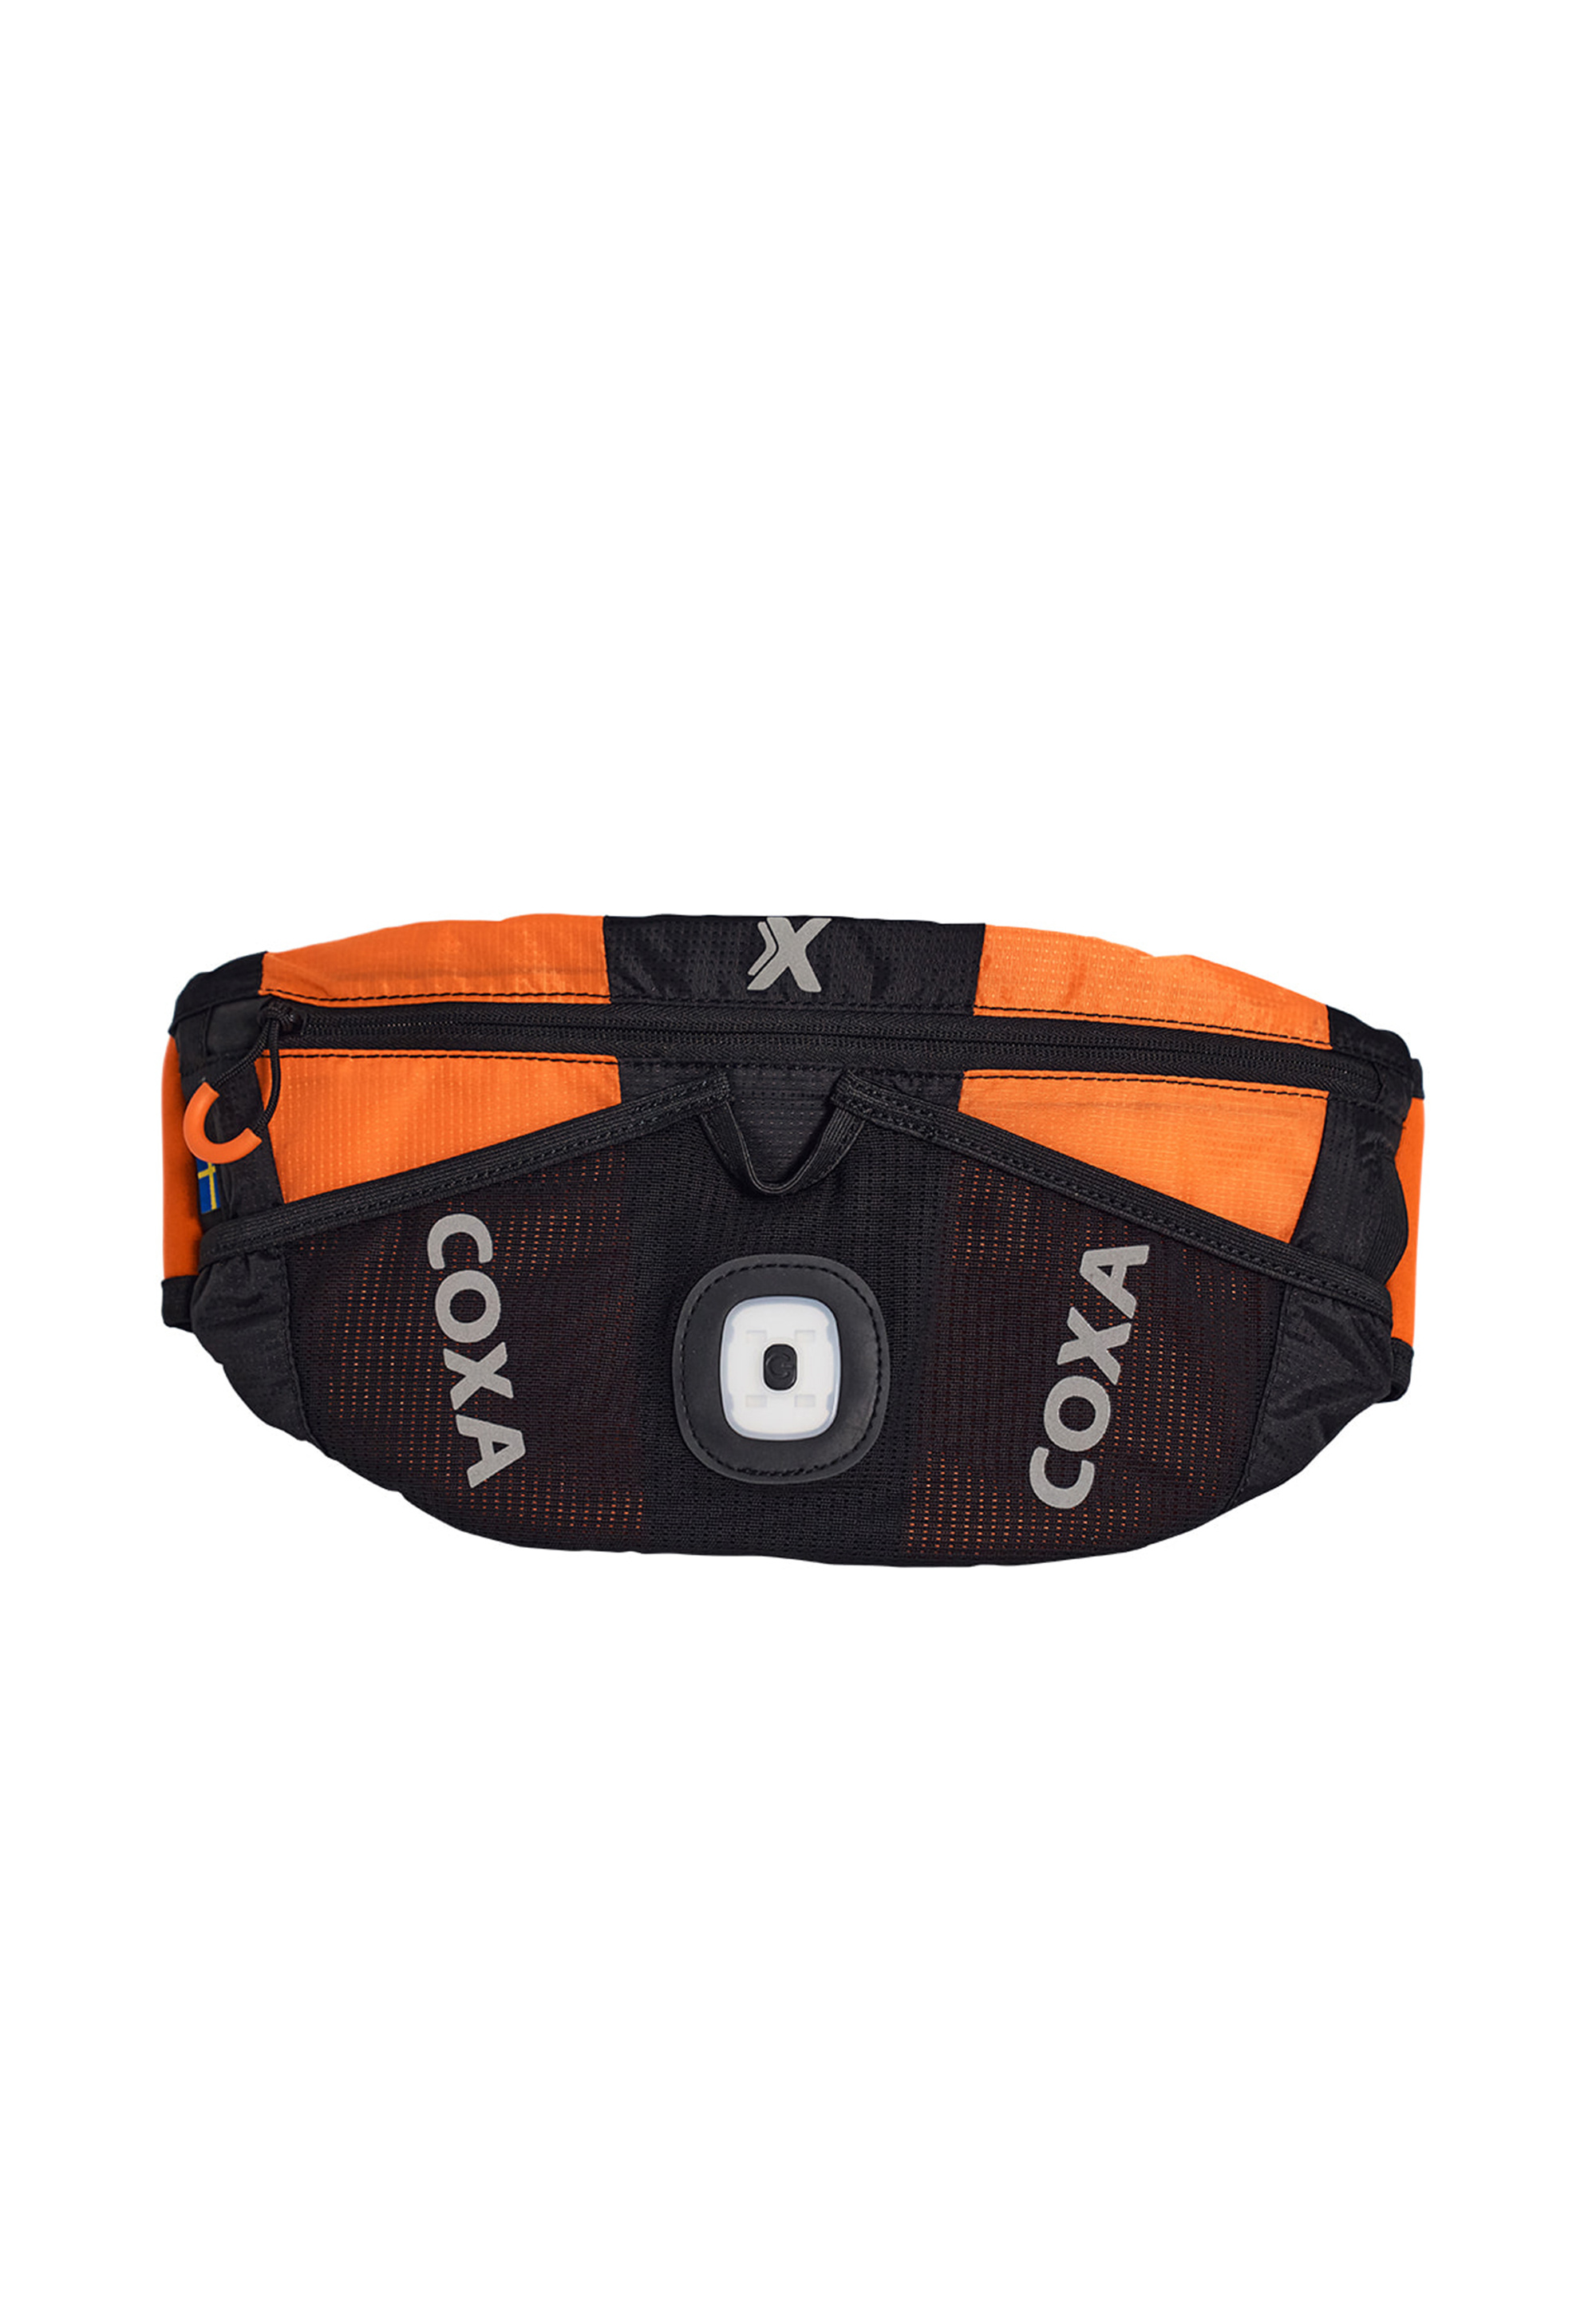 Сумка через плечо Coxa Carry Gürtel WR1 Orange, оранжевый